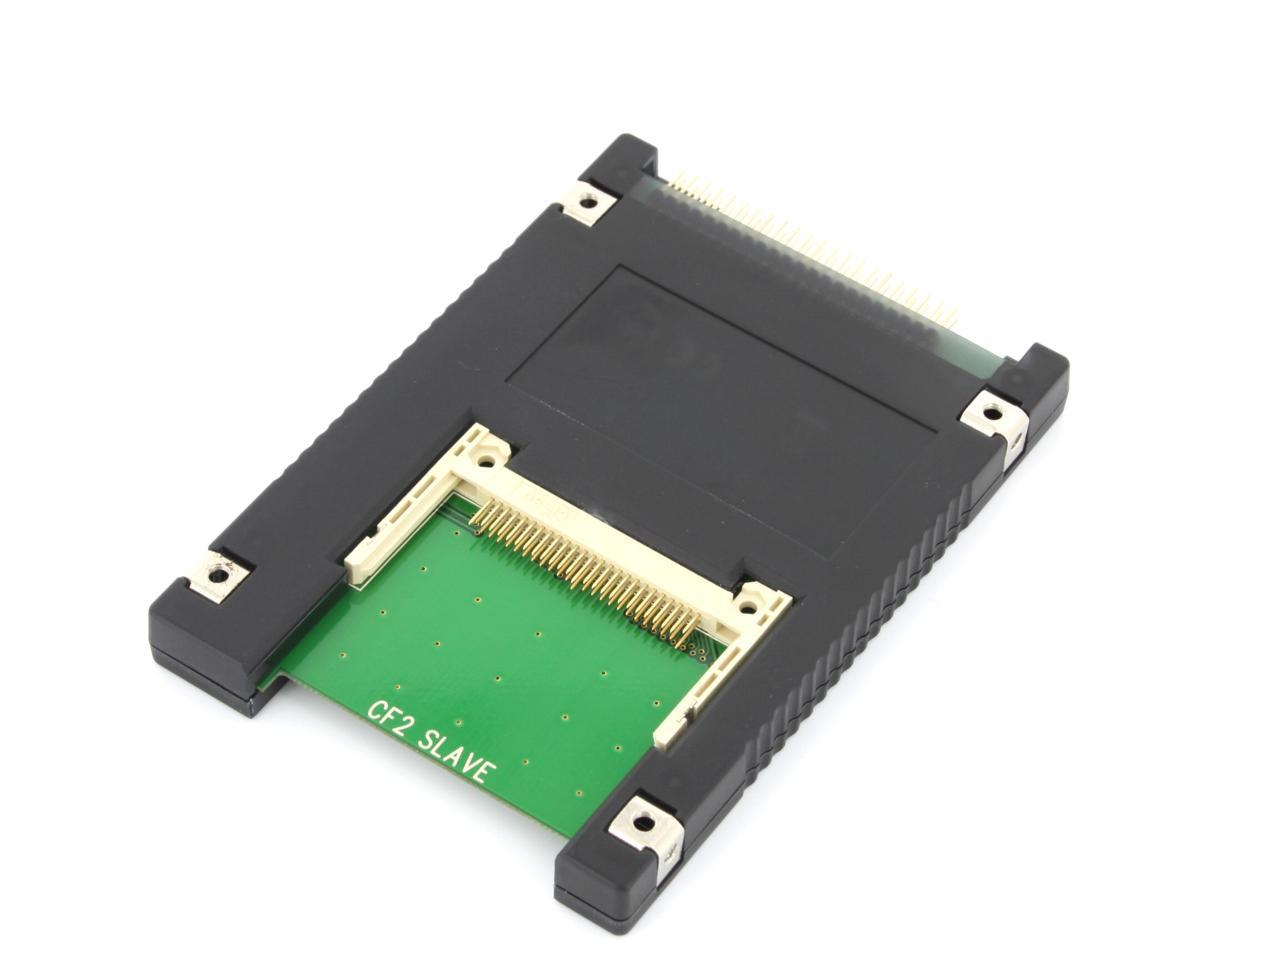 Syba Dual Compact Flash Cf To 44 Pin Ide/Pata 2.5" Adapter Enclosure Black Sd-A 